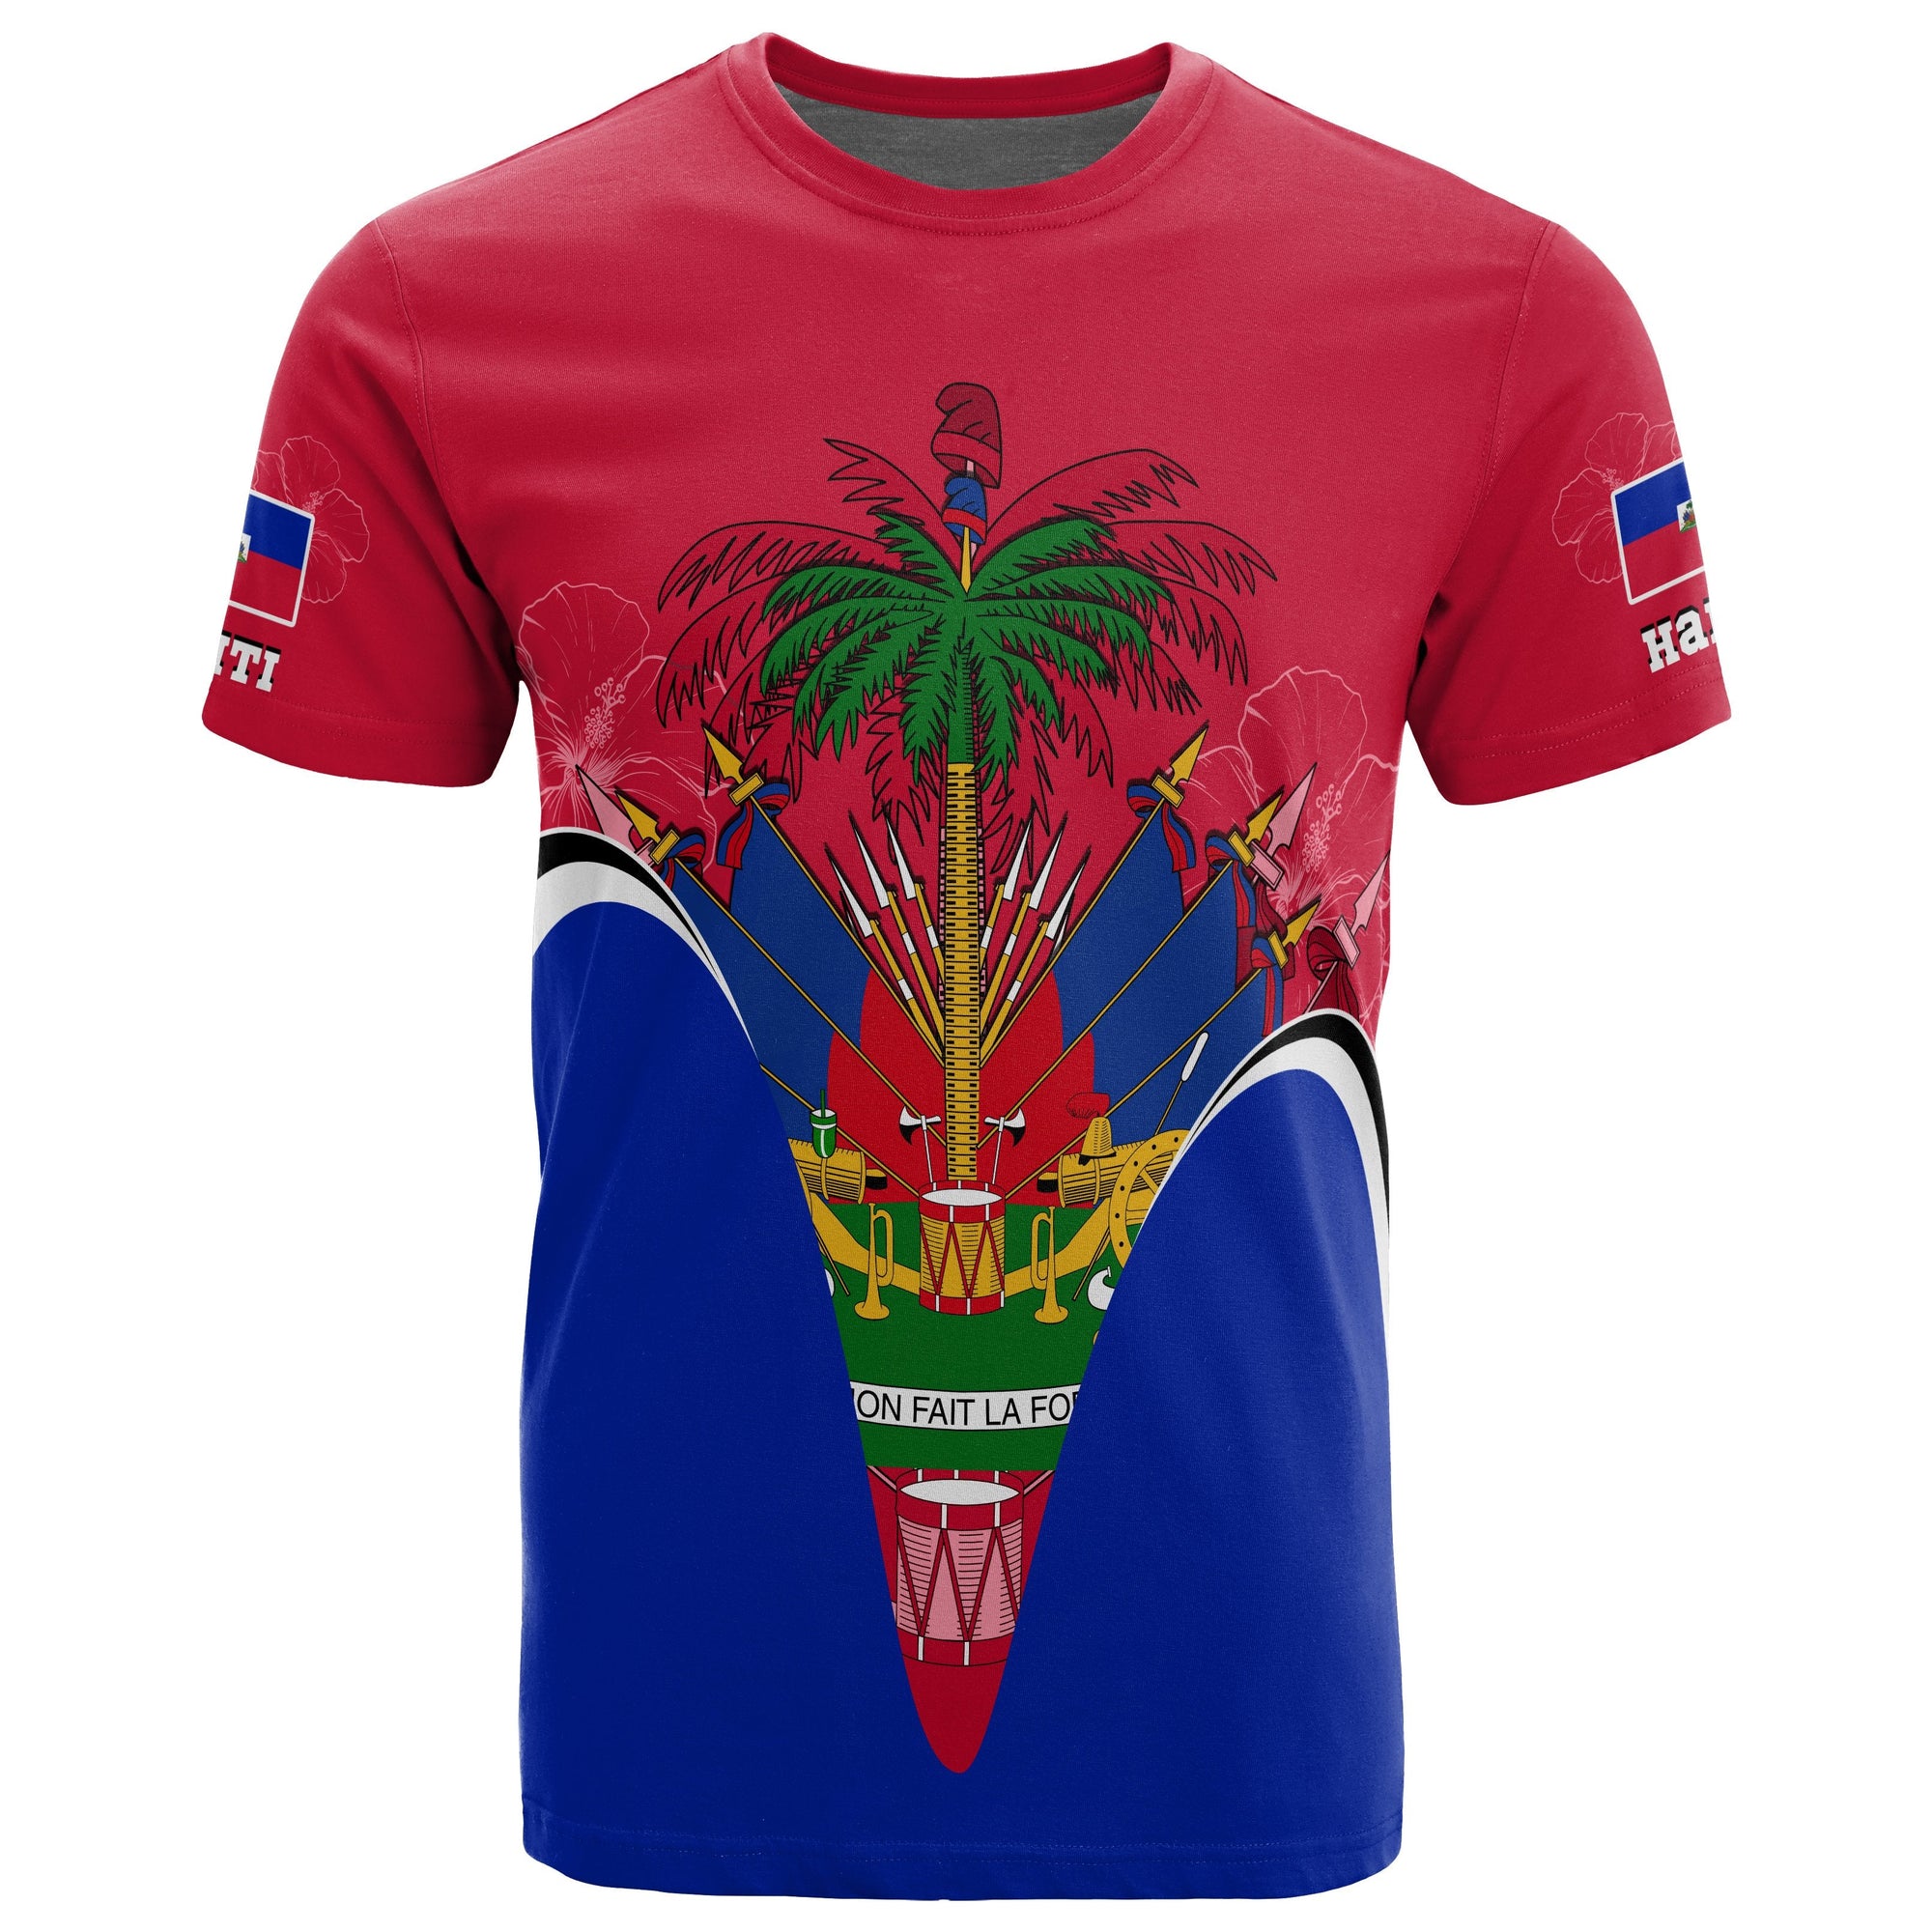 haiti-t-shirt-haiti-coat-of-arms